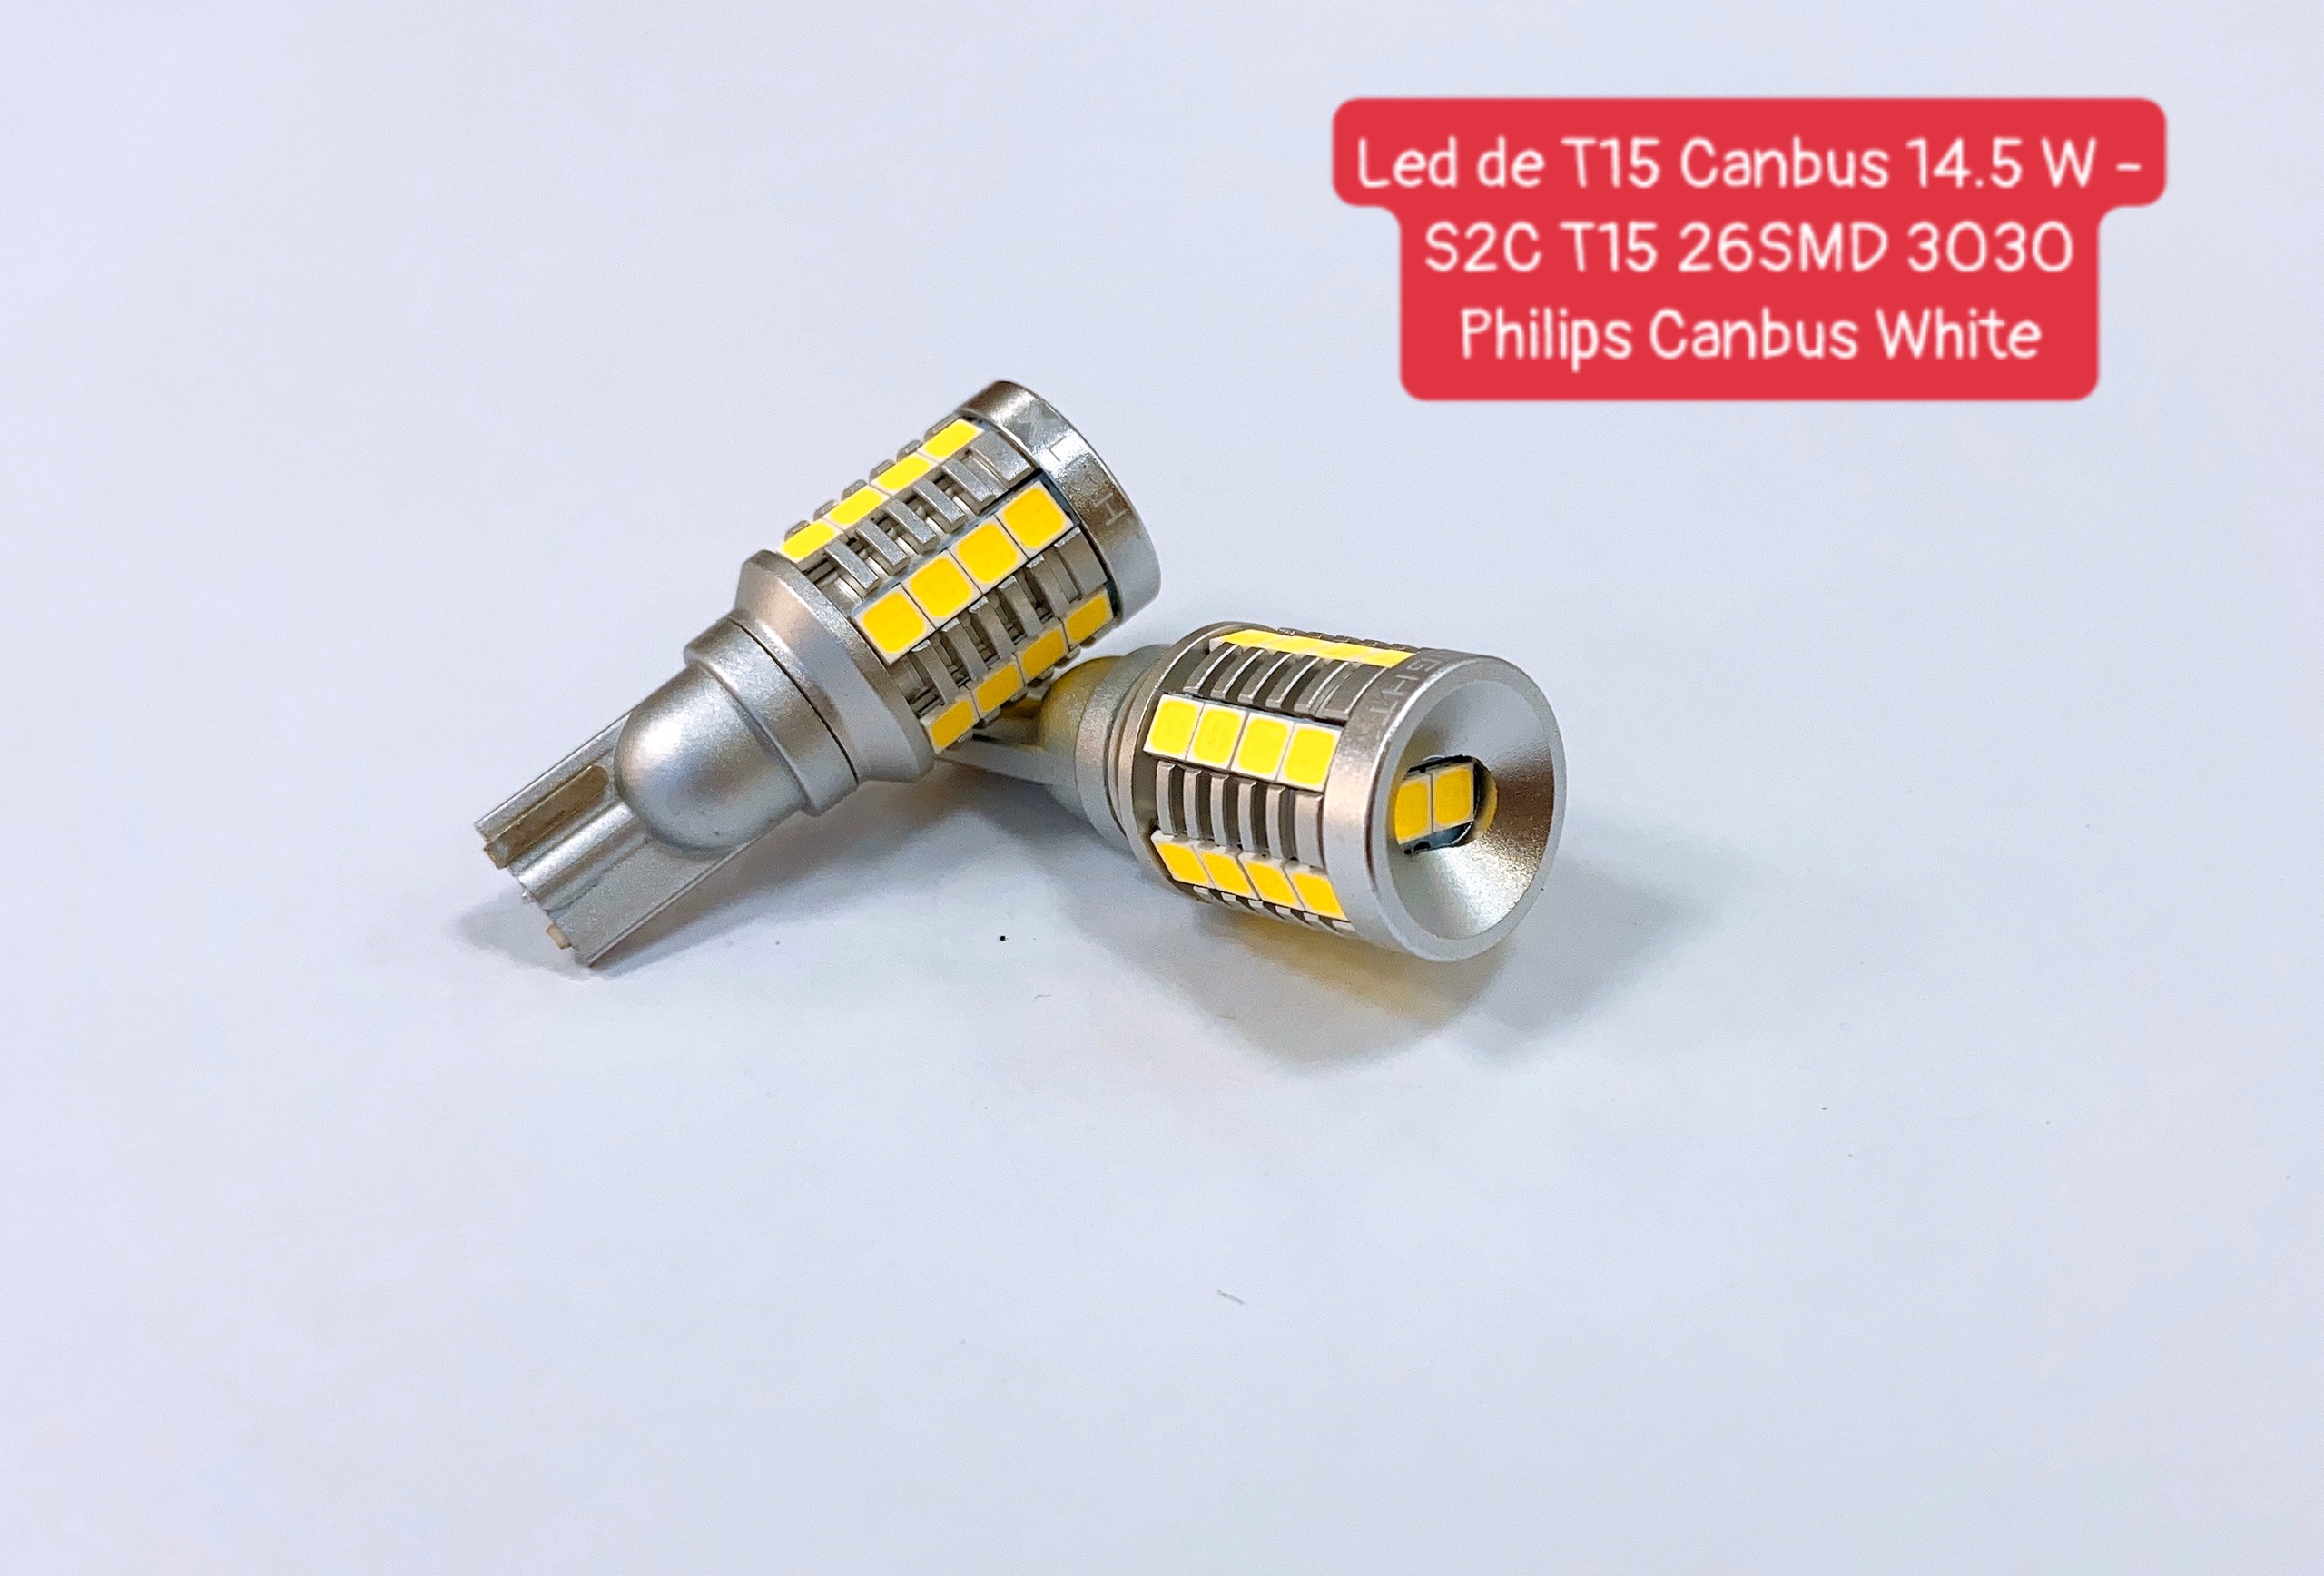 LED DE T15 CANBUS 14.5W